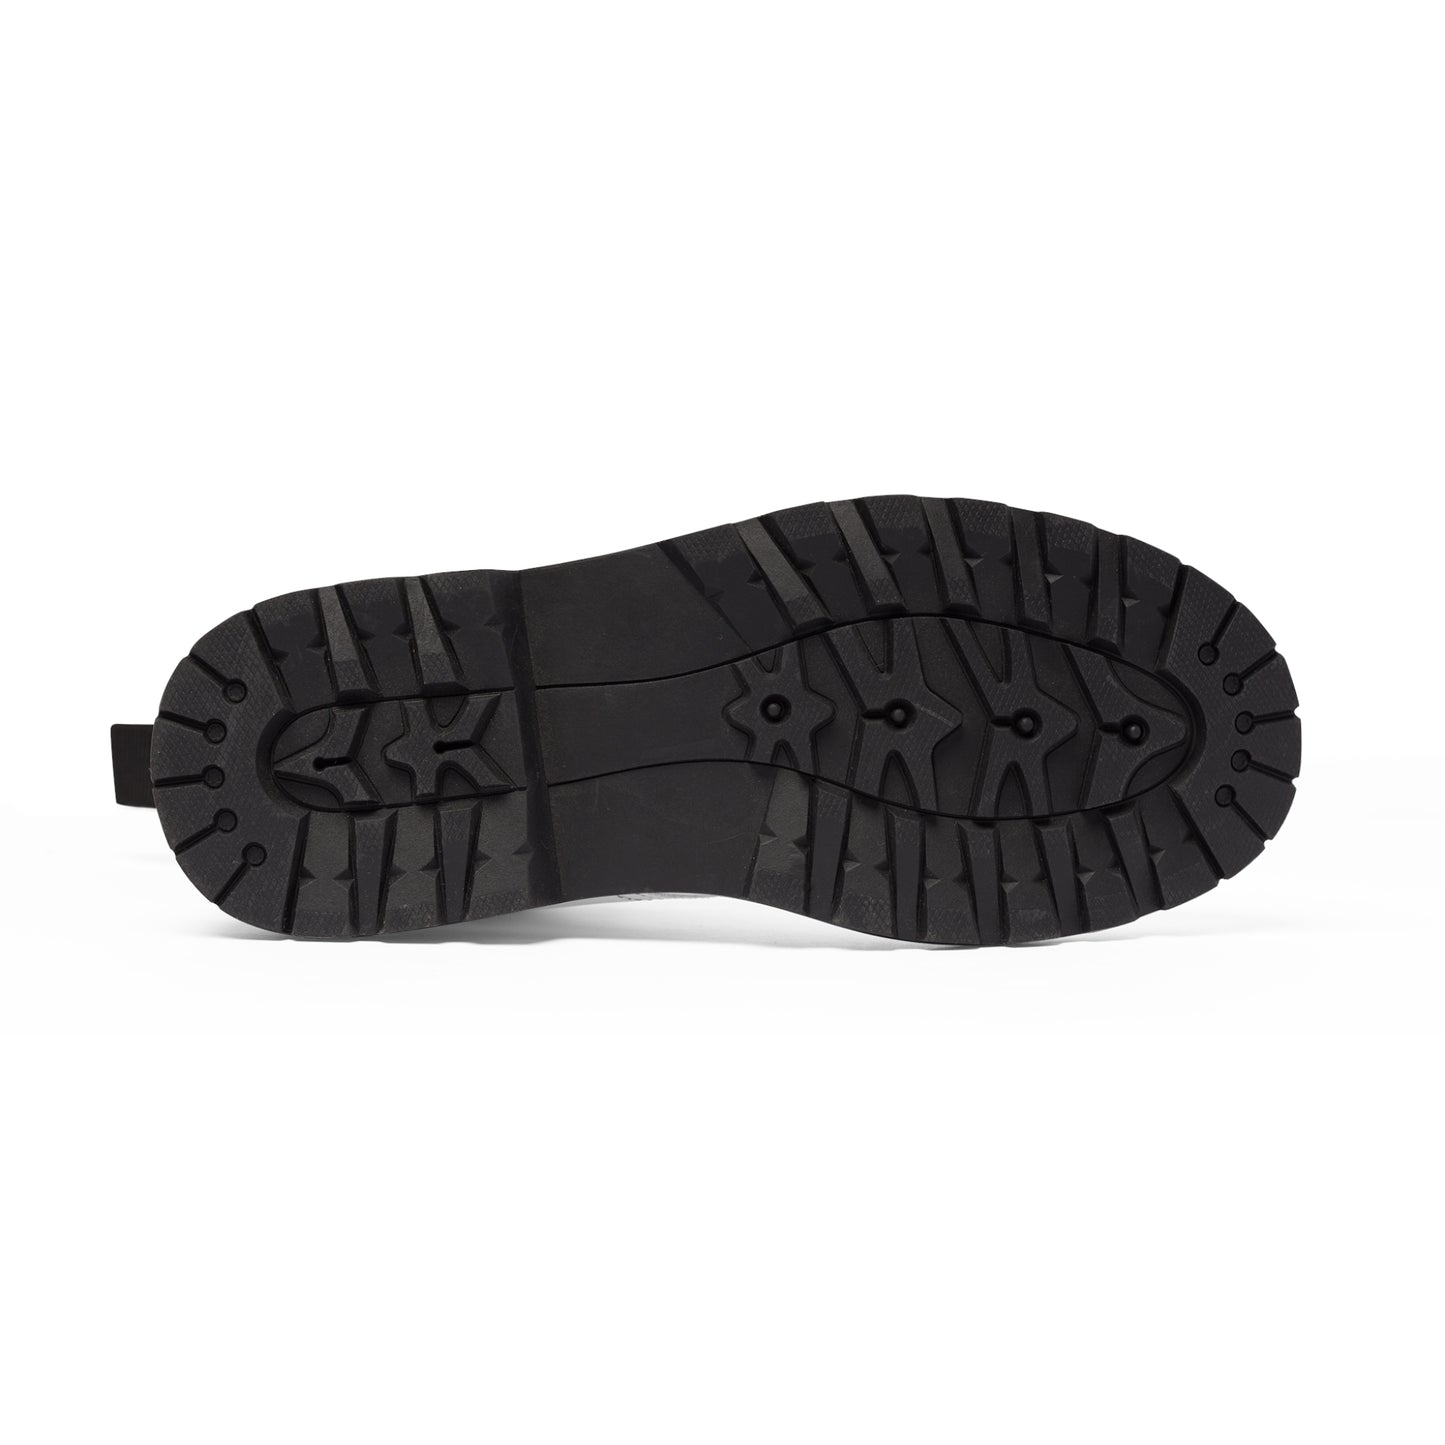 Men's Canvas Boots - 02863 US 10.5 Black sole